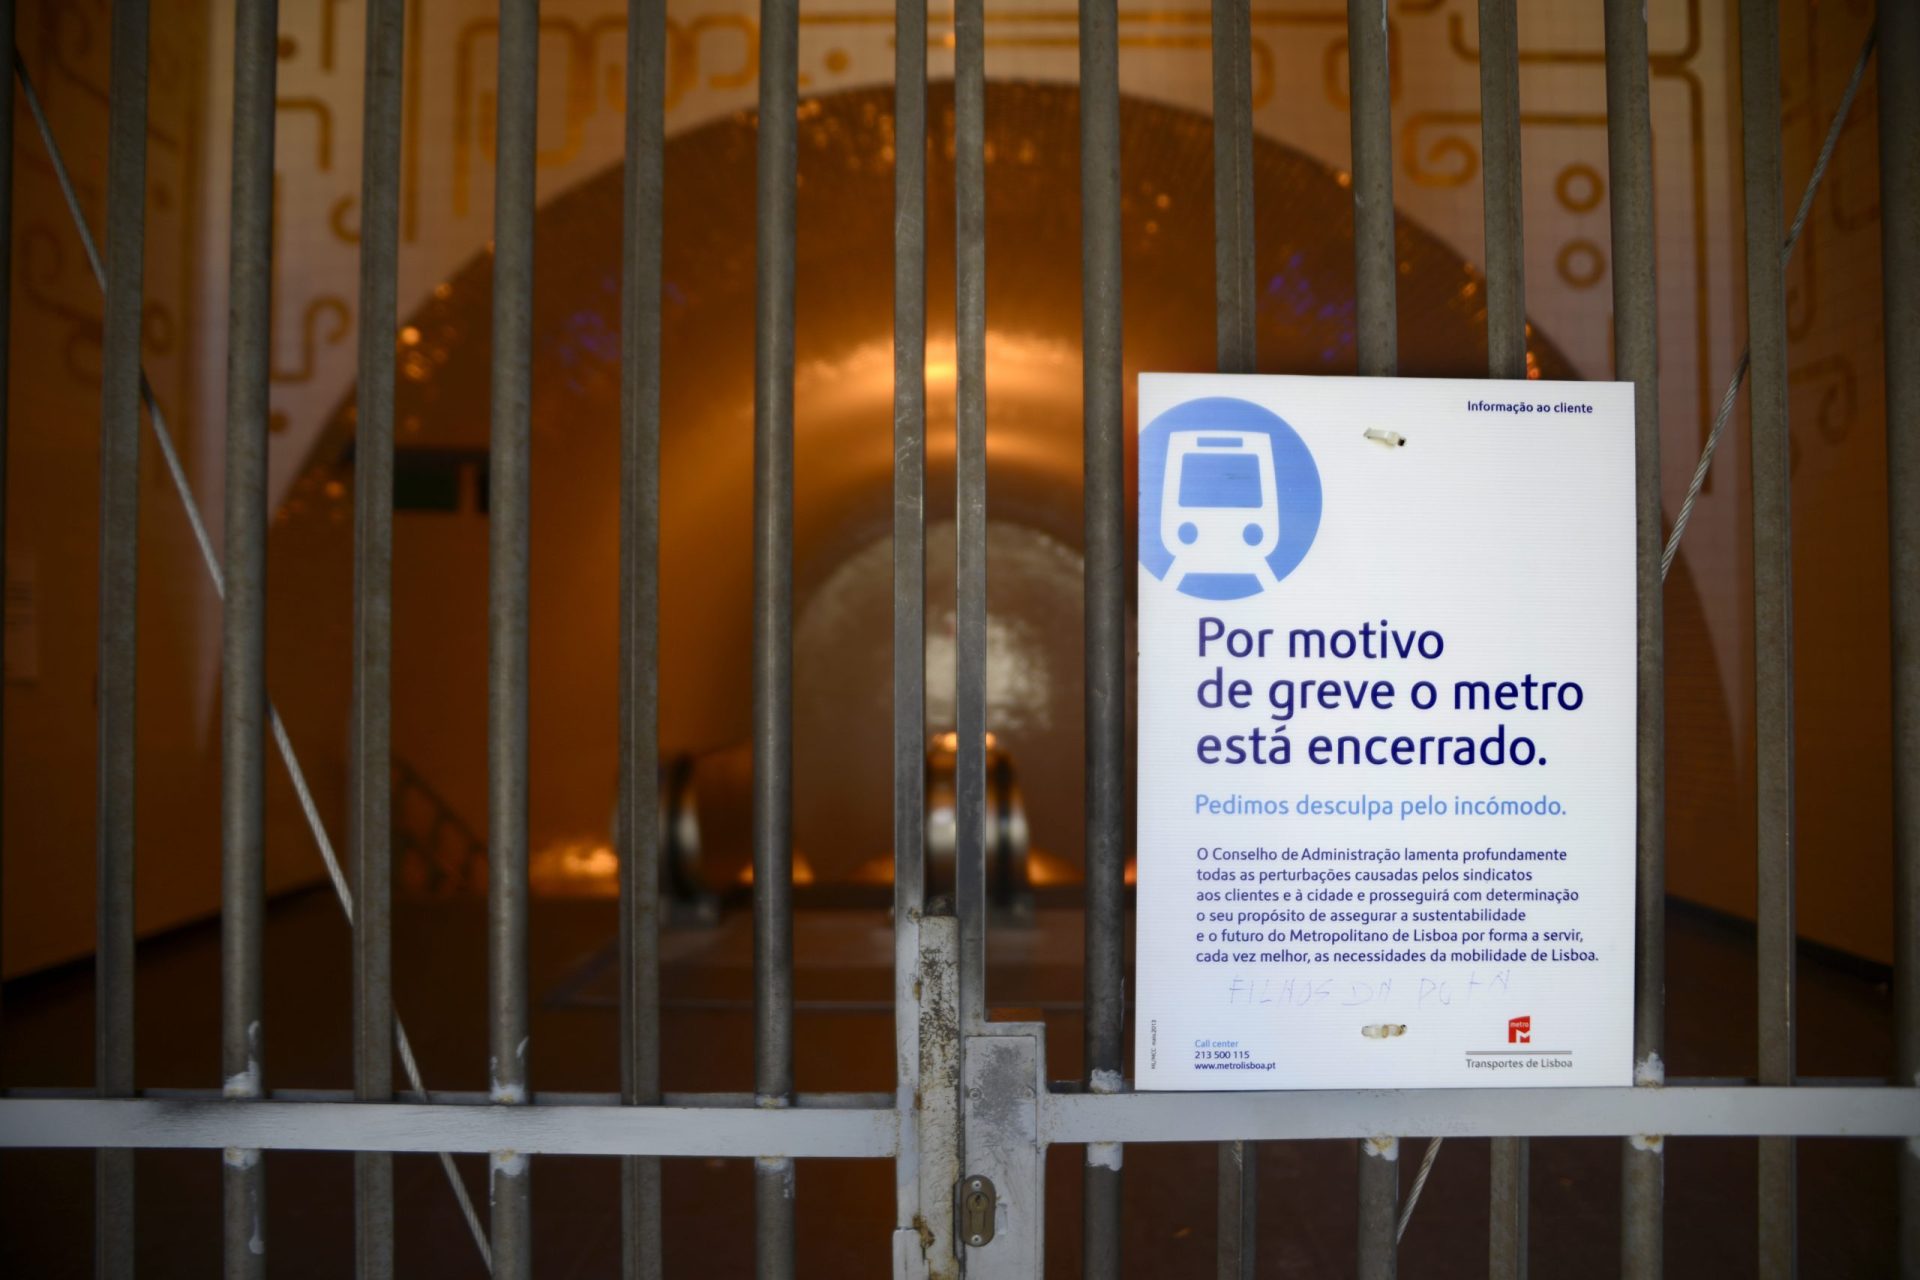 Anunciada nova greve do Metro de Lisboa